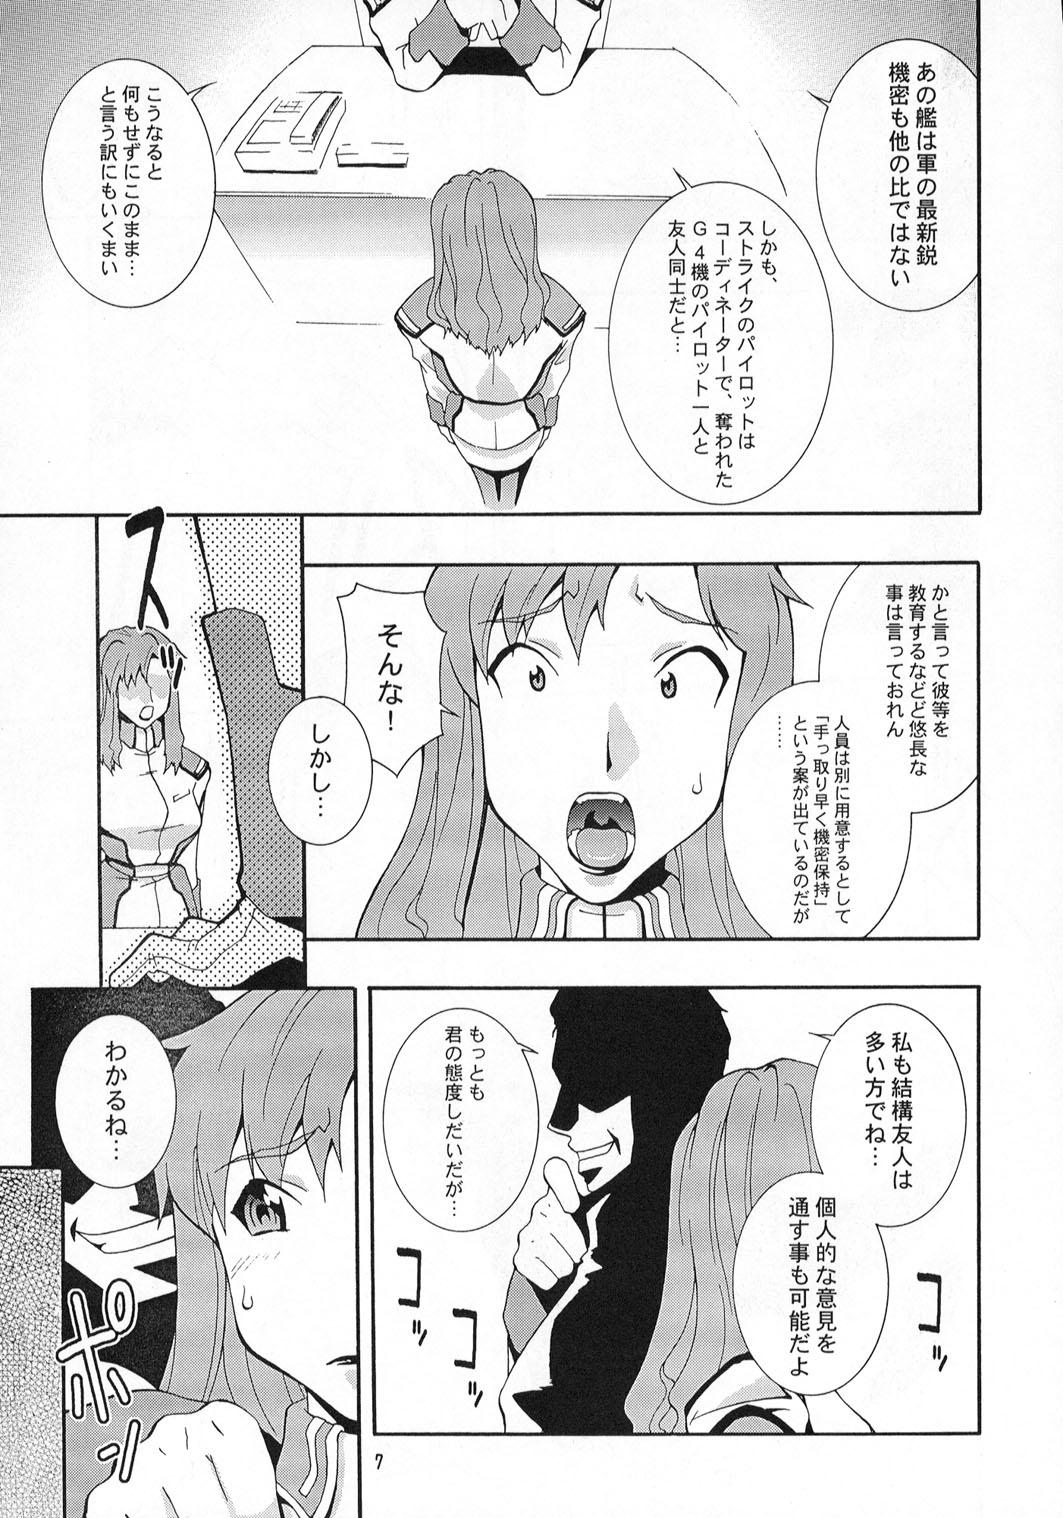 Gaybukkake Nyan Nyan Seed - Gundam seed Pov Sex - Page 6